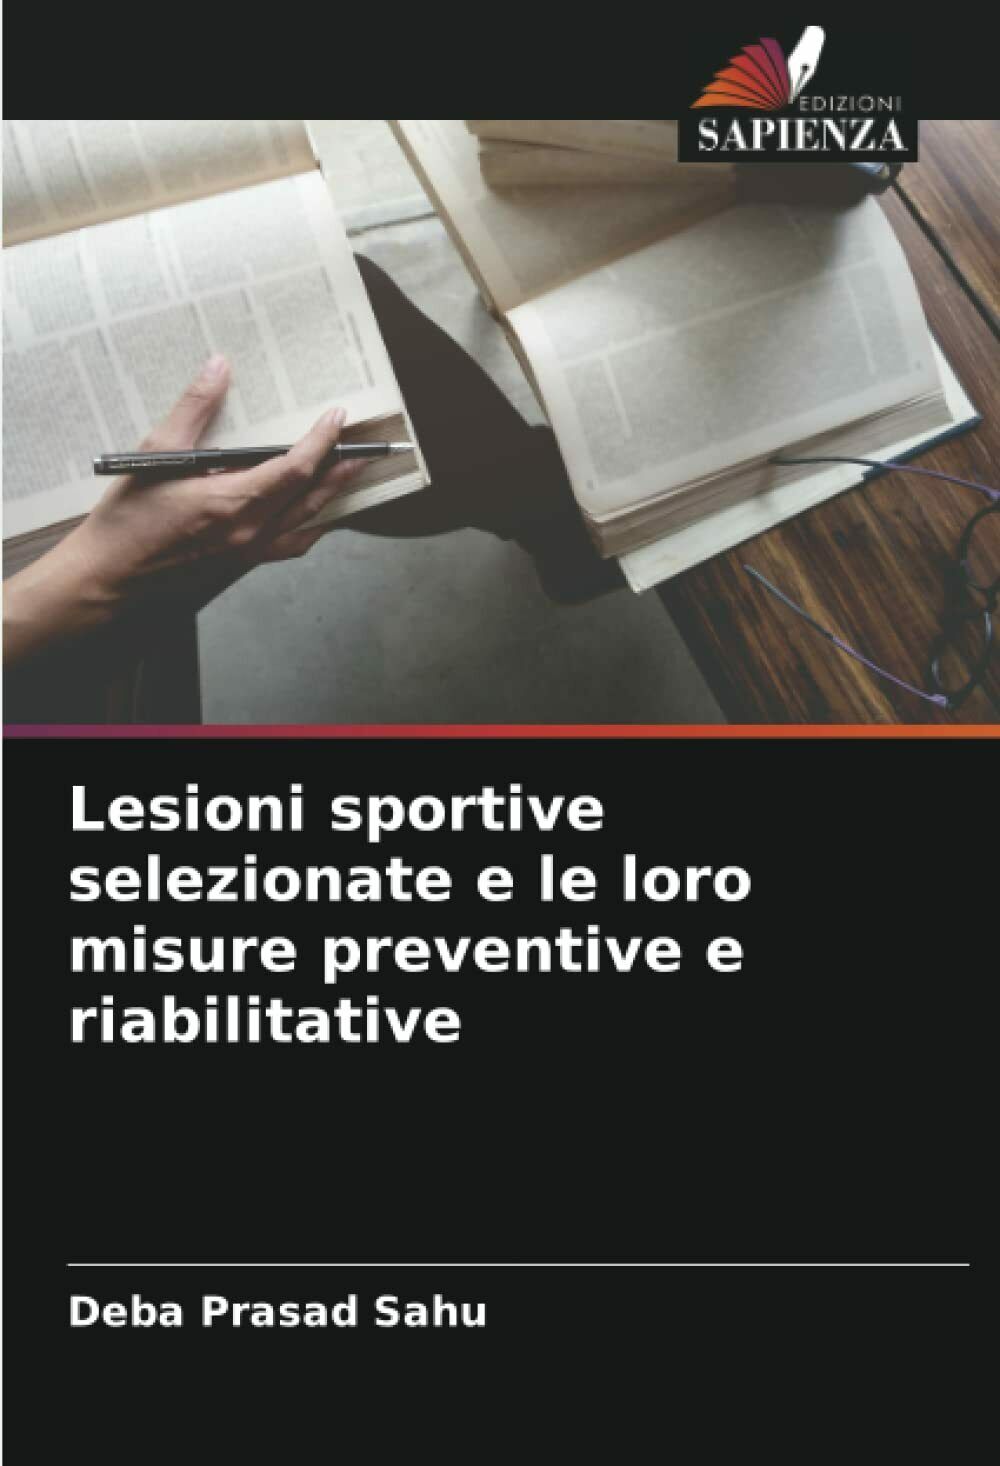 Lesioni sportive selezionate e le loro misure preventive e riabilitative - 2021